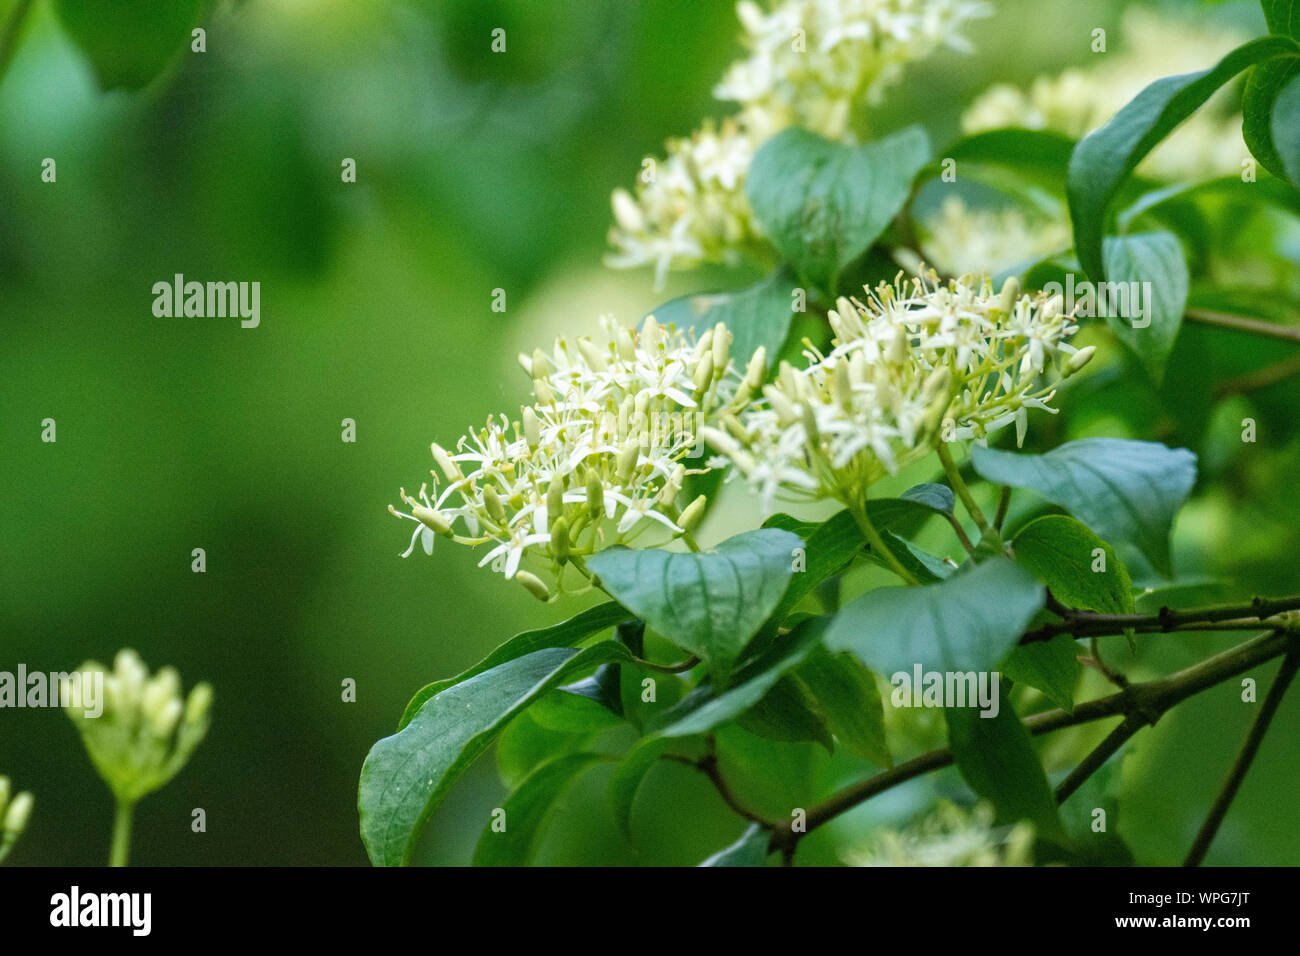 Elderflower (Sambucus canadensis) flowers Stock Photo